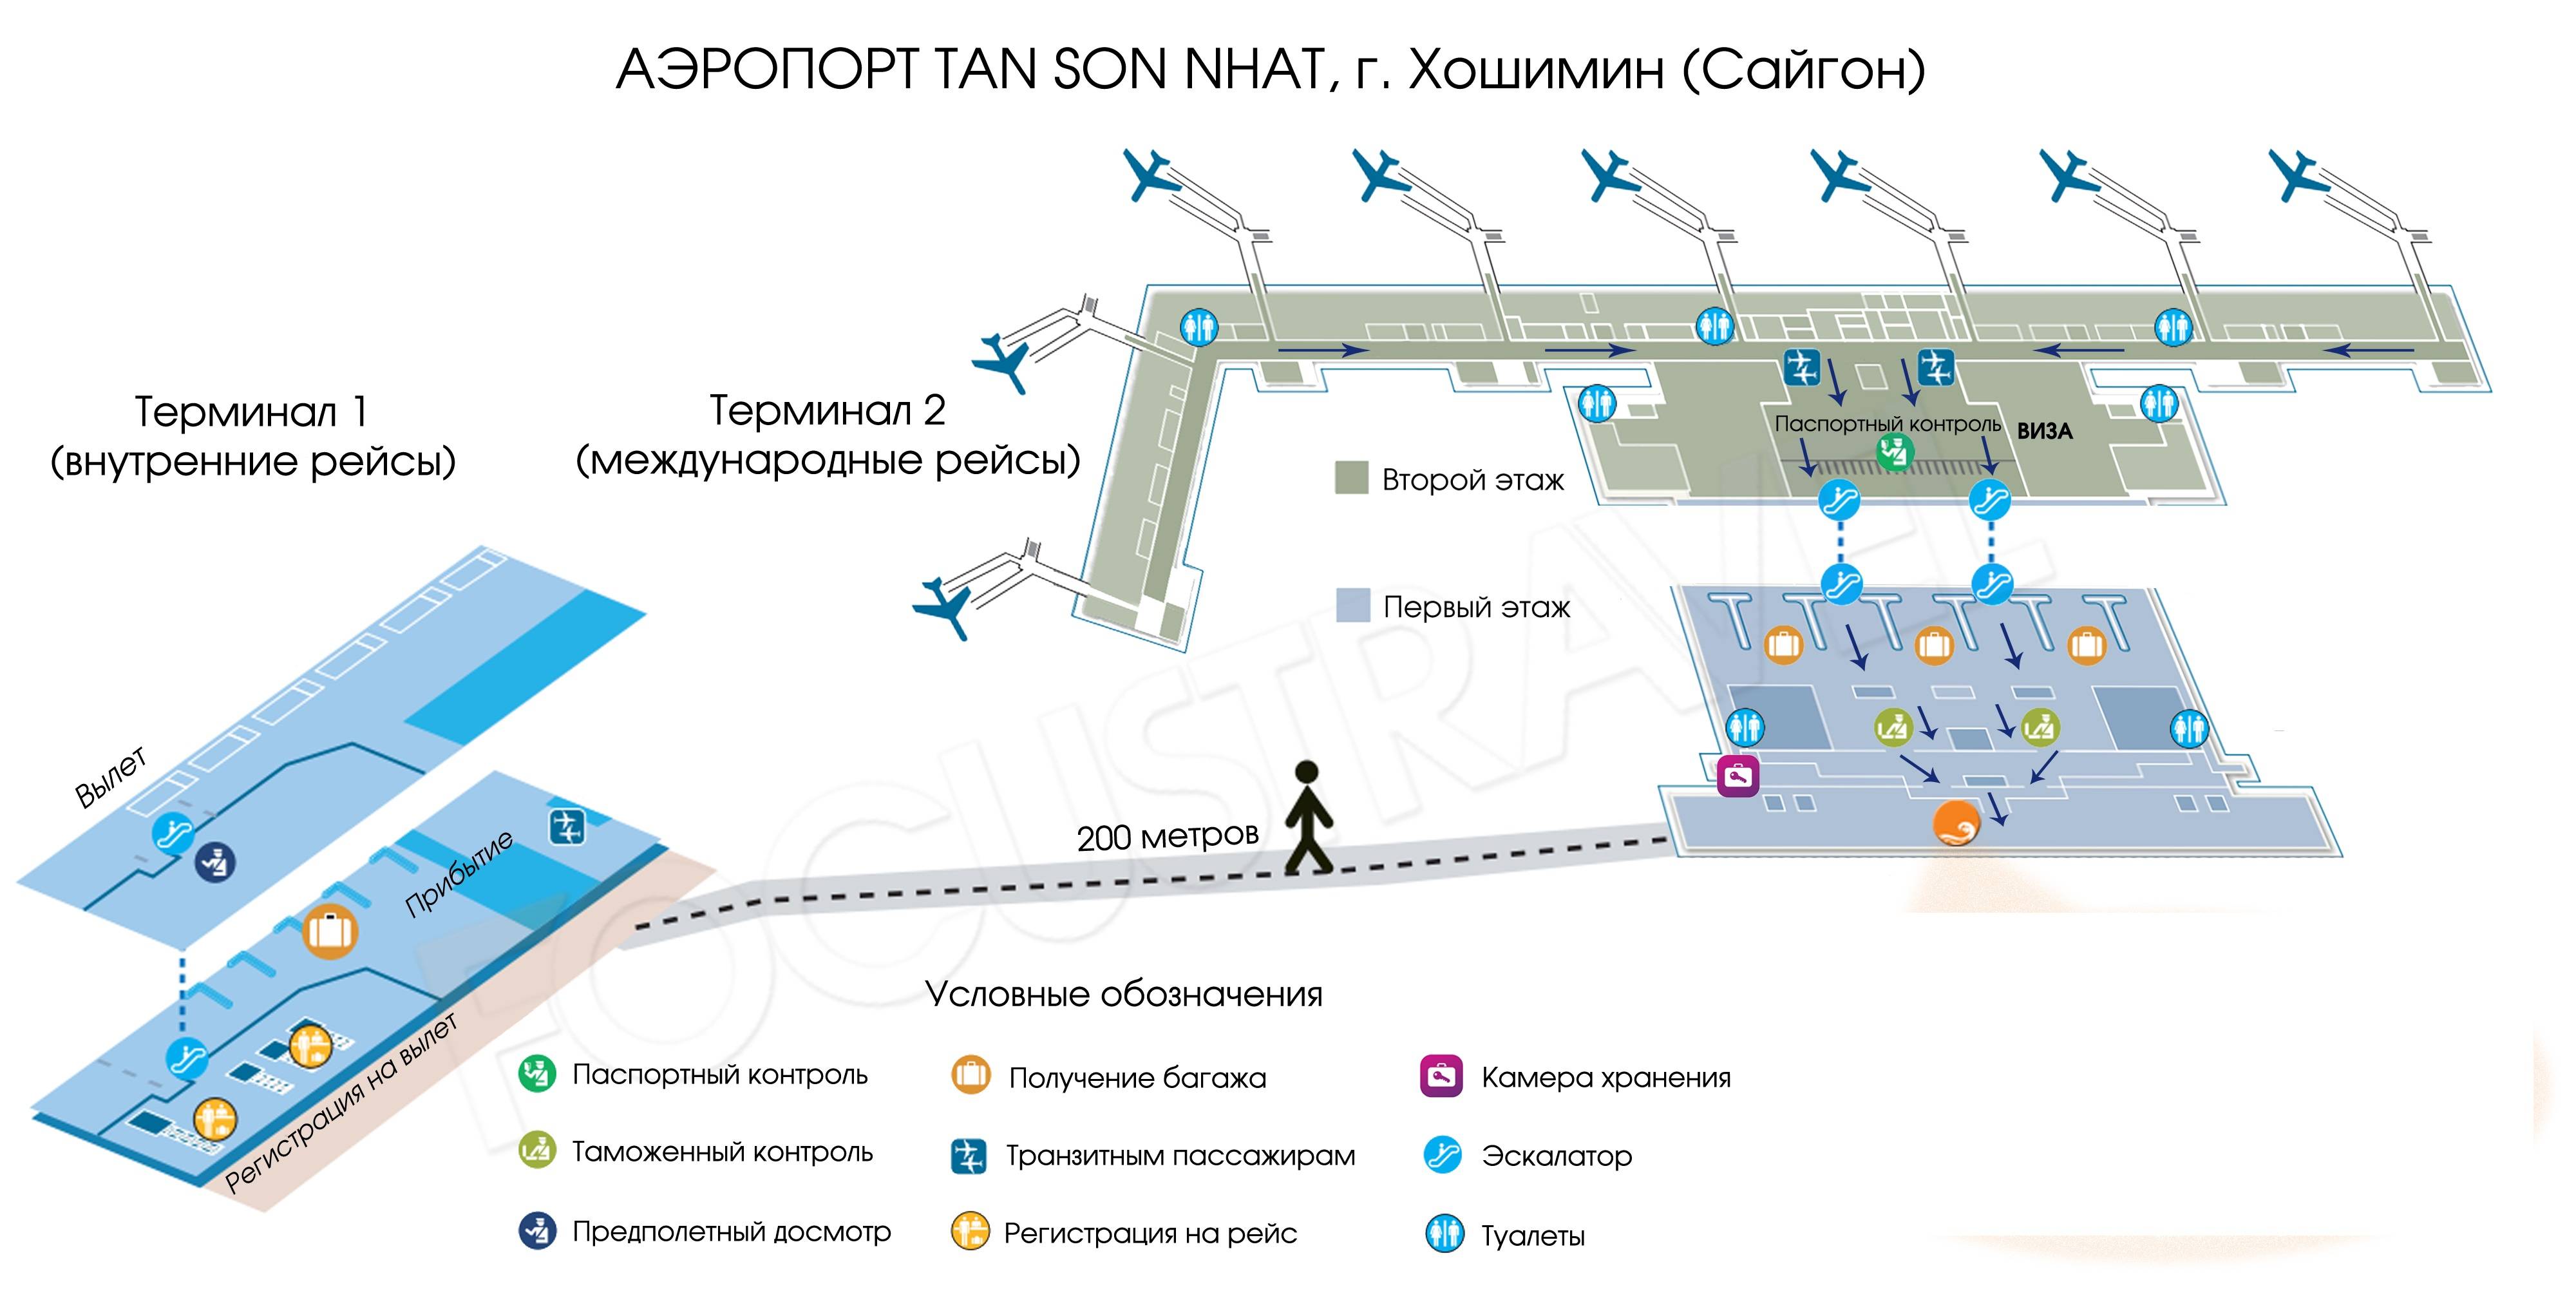 Аэропорт курск (urs) восточный - онлайн табло, расписание рейсов